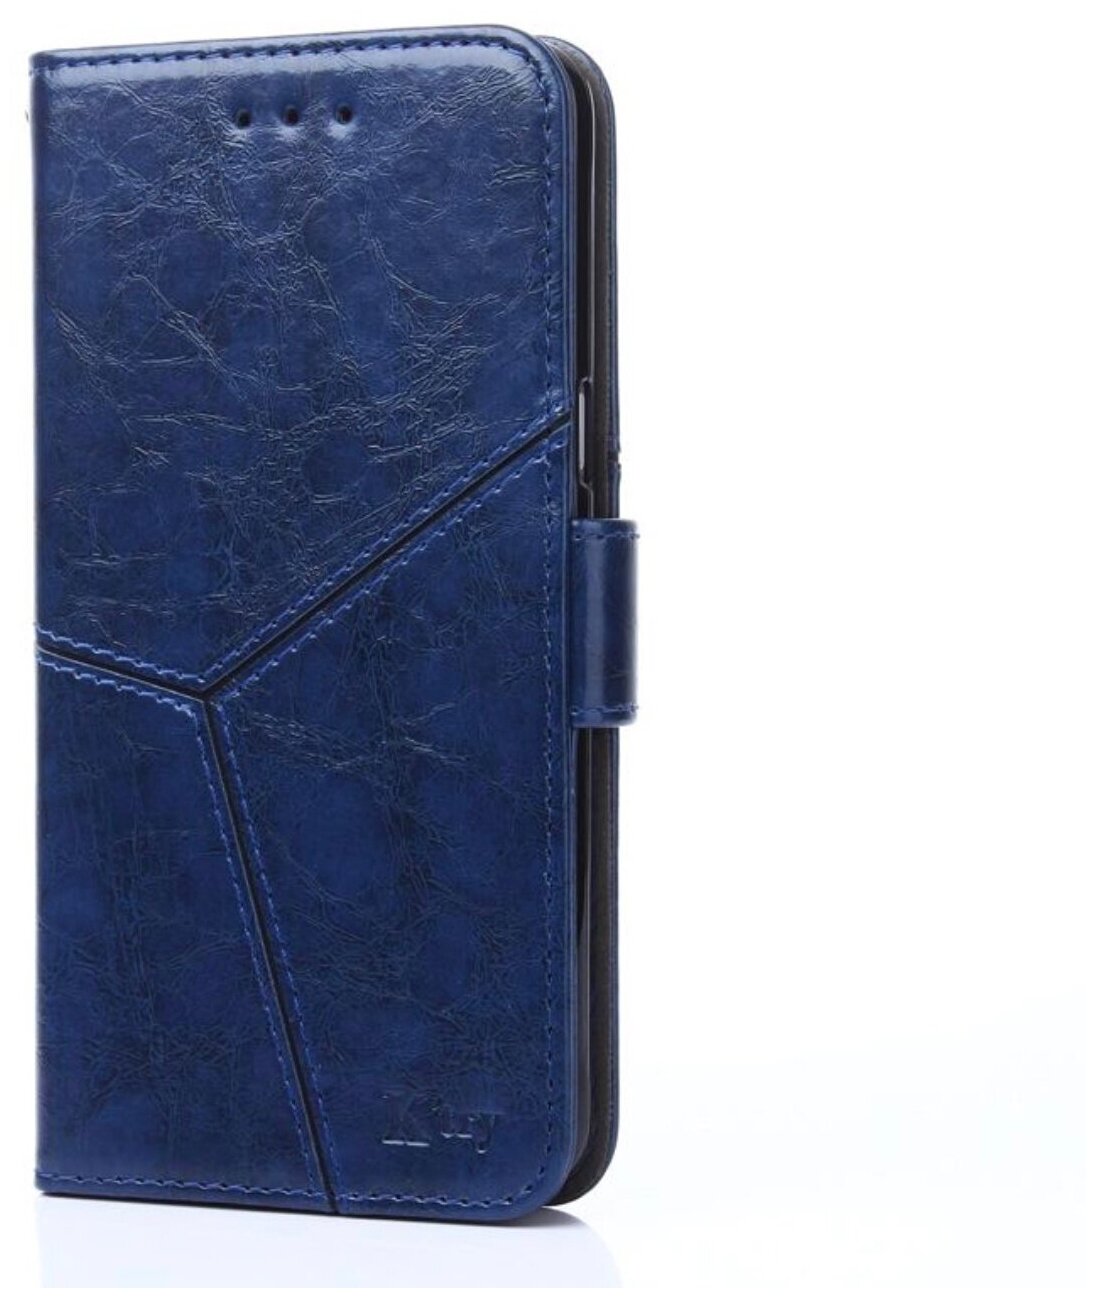 Чехол-книжка Чехол. ру для Nokia 7 прошитый по контуру с необычным геометрическим швом синий